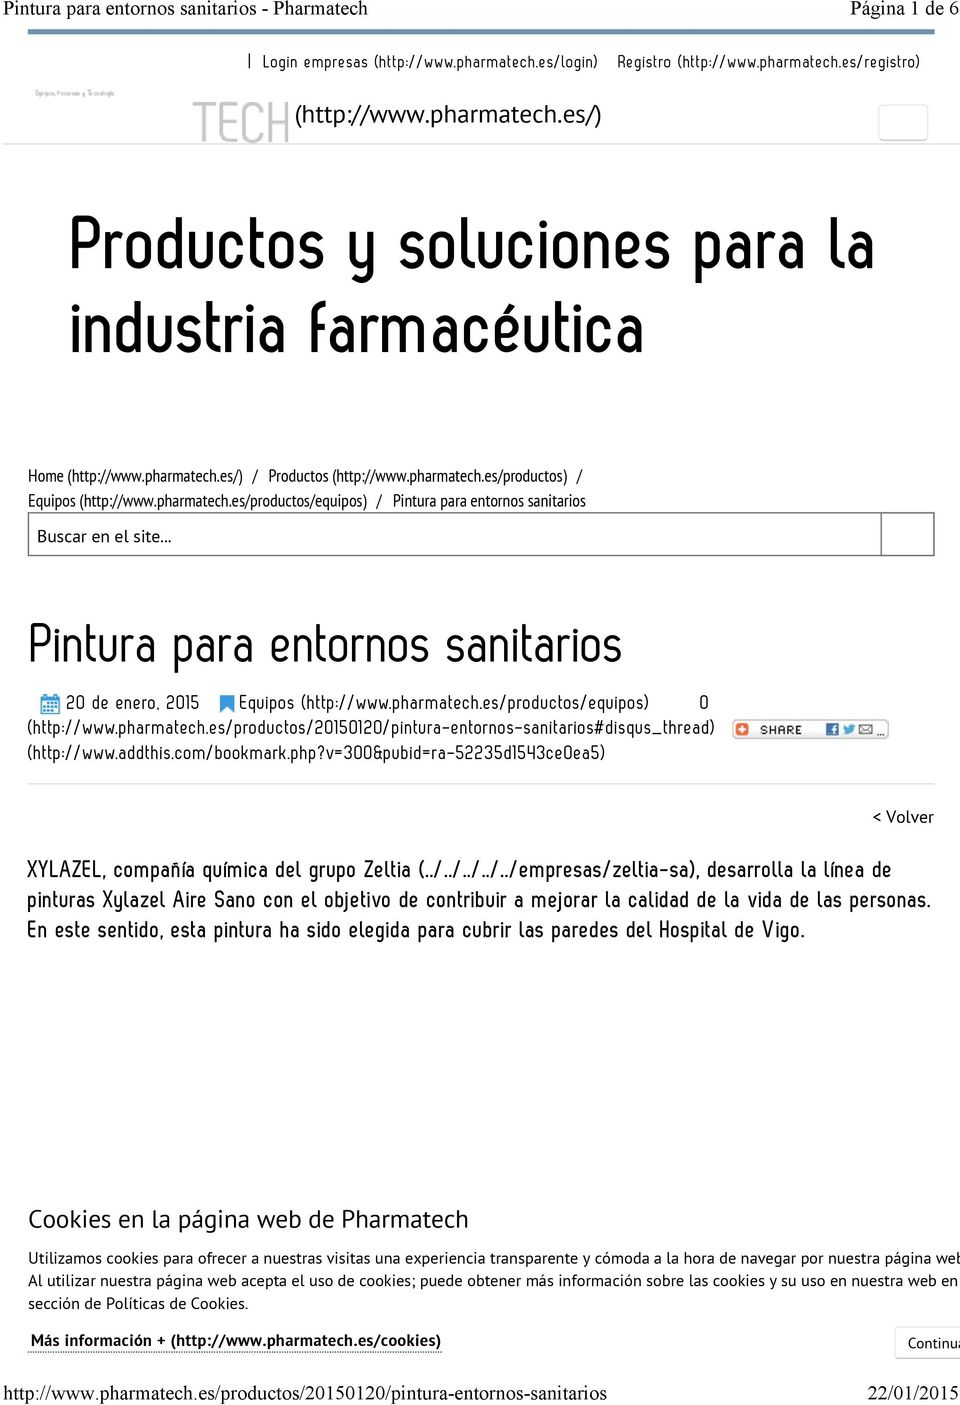 pharmatech.es/productos/equipos) / Pintura para entornos sanitarios Buscar en el site... Pintura para entornos sanitarios 20 de enero, 2015 Equipos (http://www.pharmatech.es/productos/equipos) 0 (http://www.